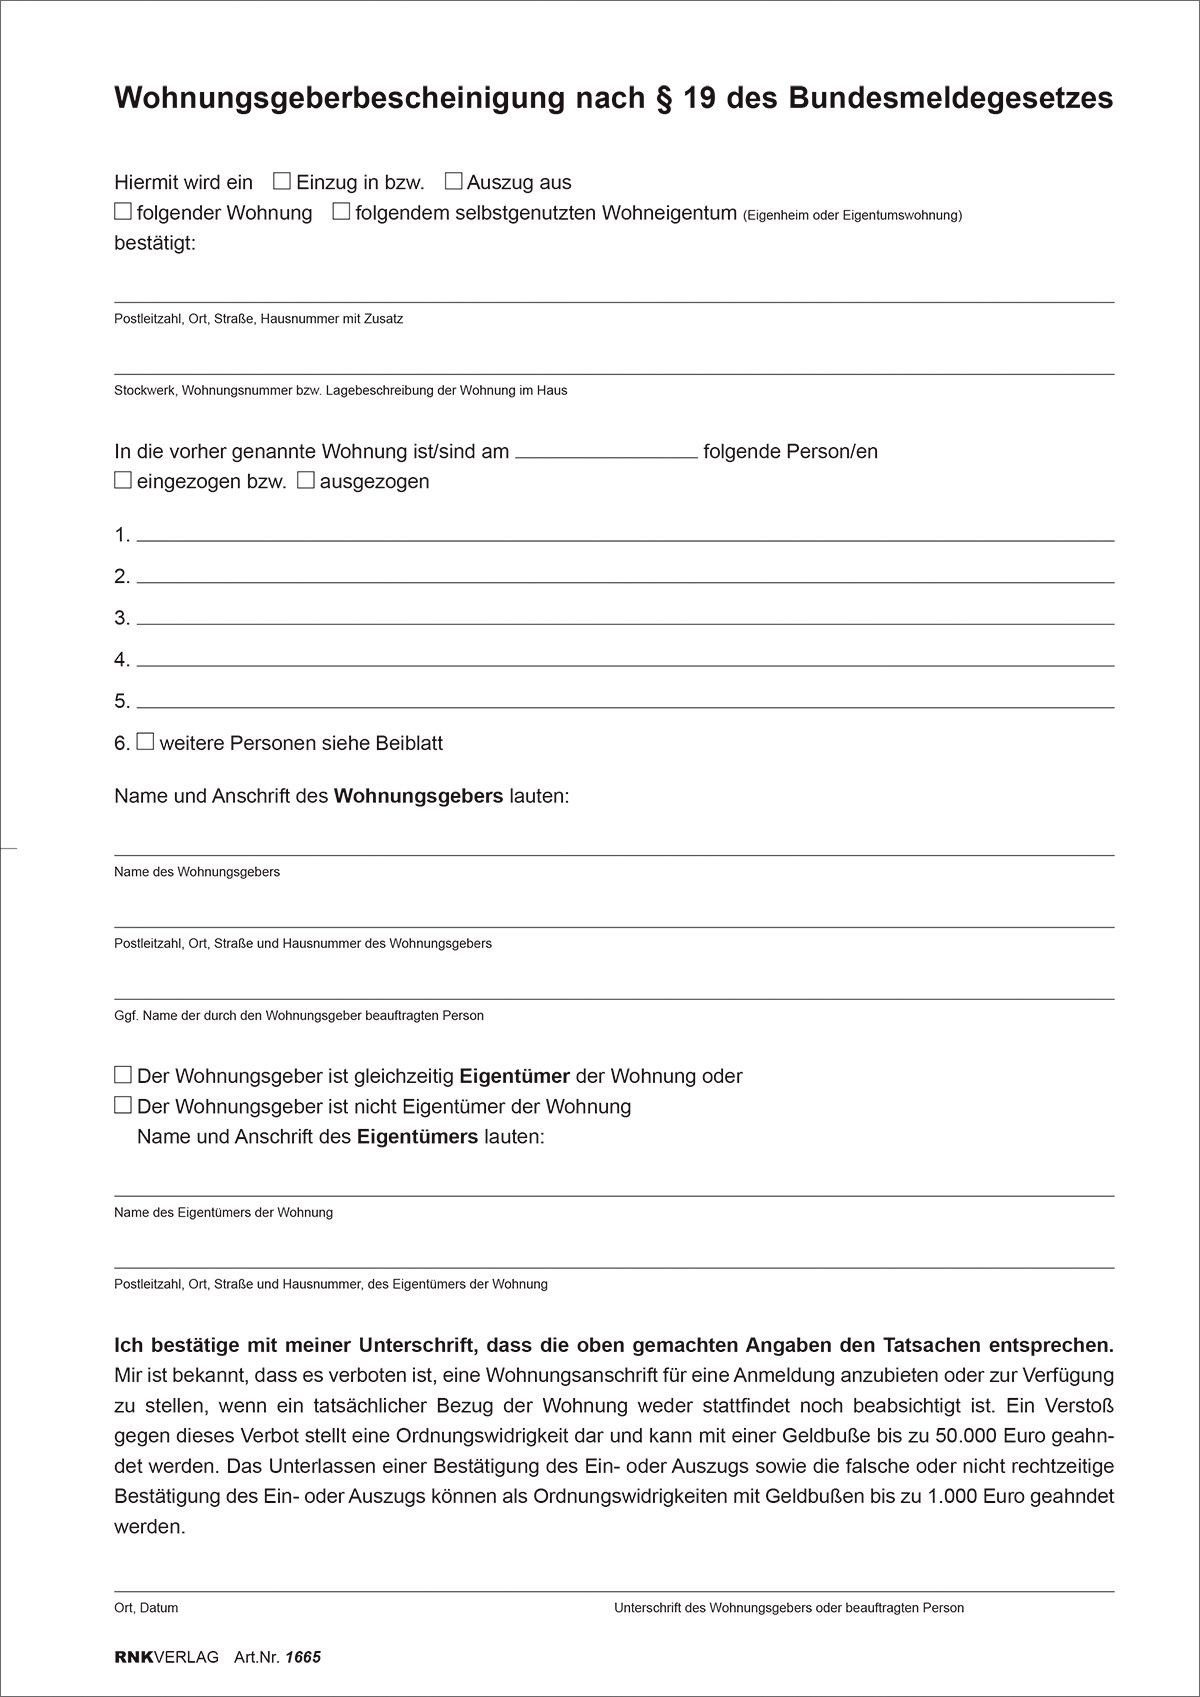 RNK Verlag Formularblock RNK Verlag Vordruck "Wohnungsgeberbescheinigung", DIN A4